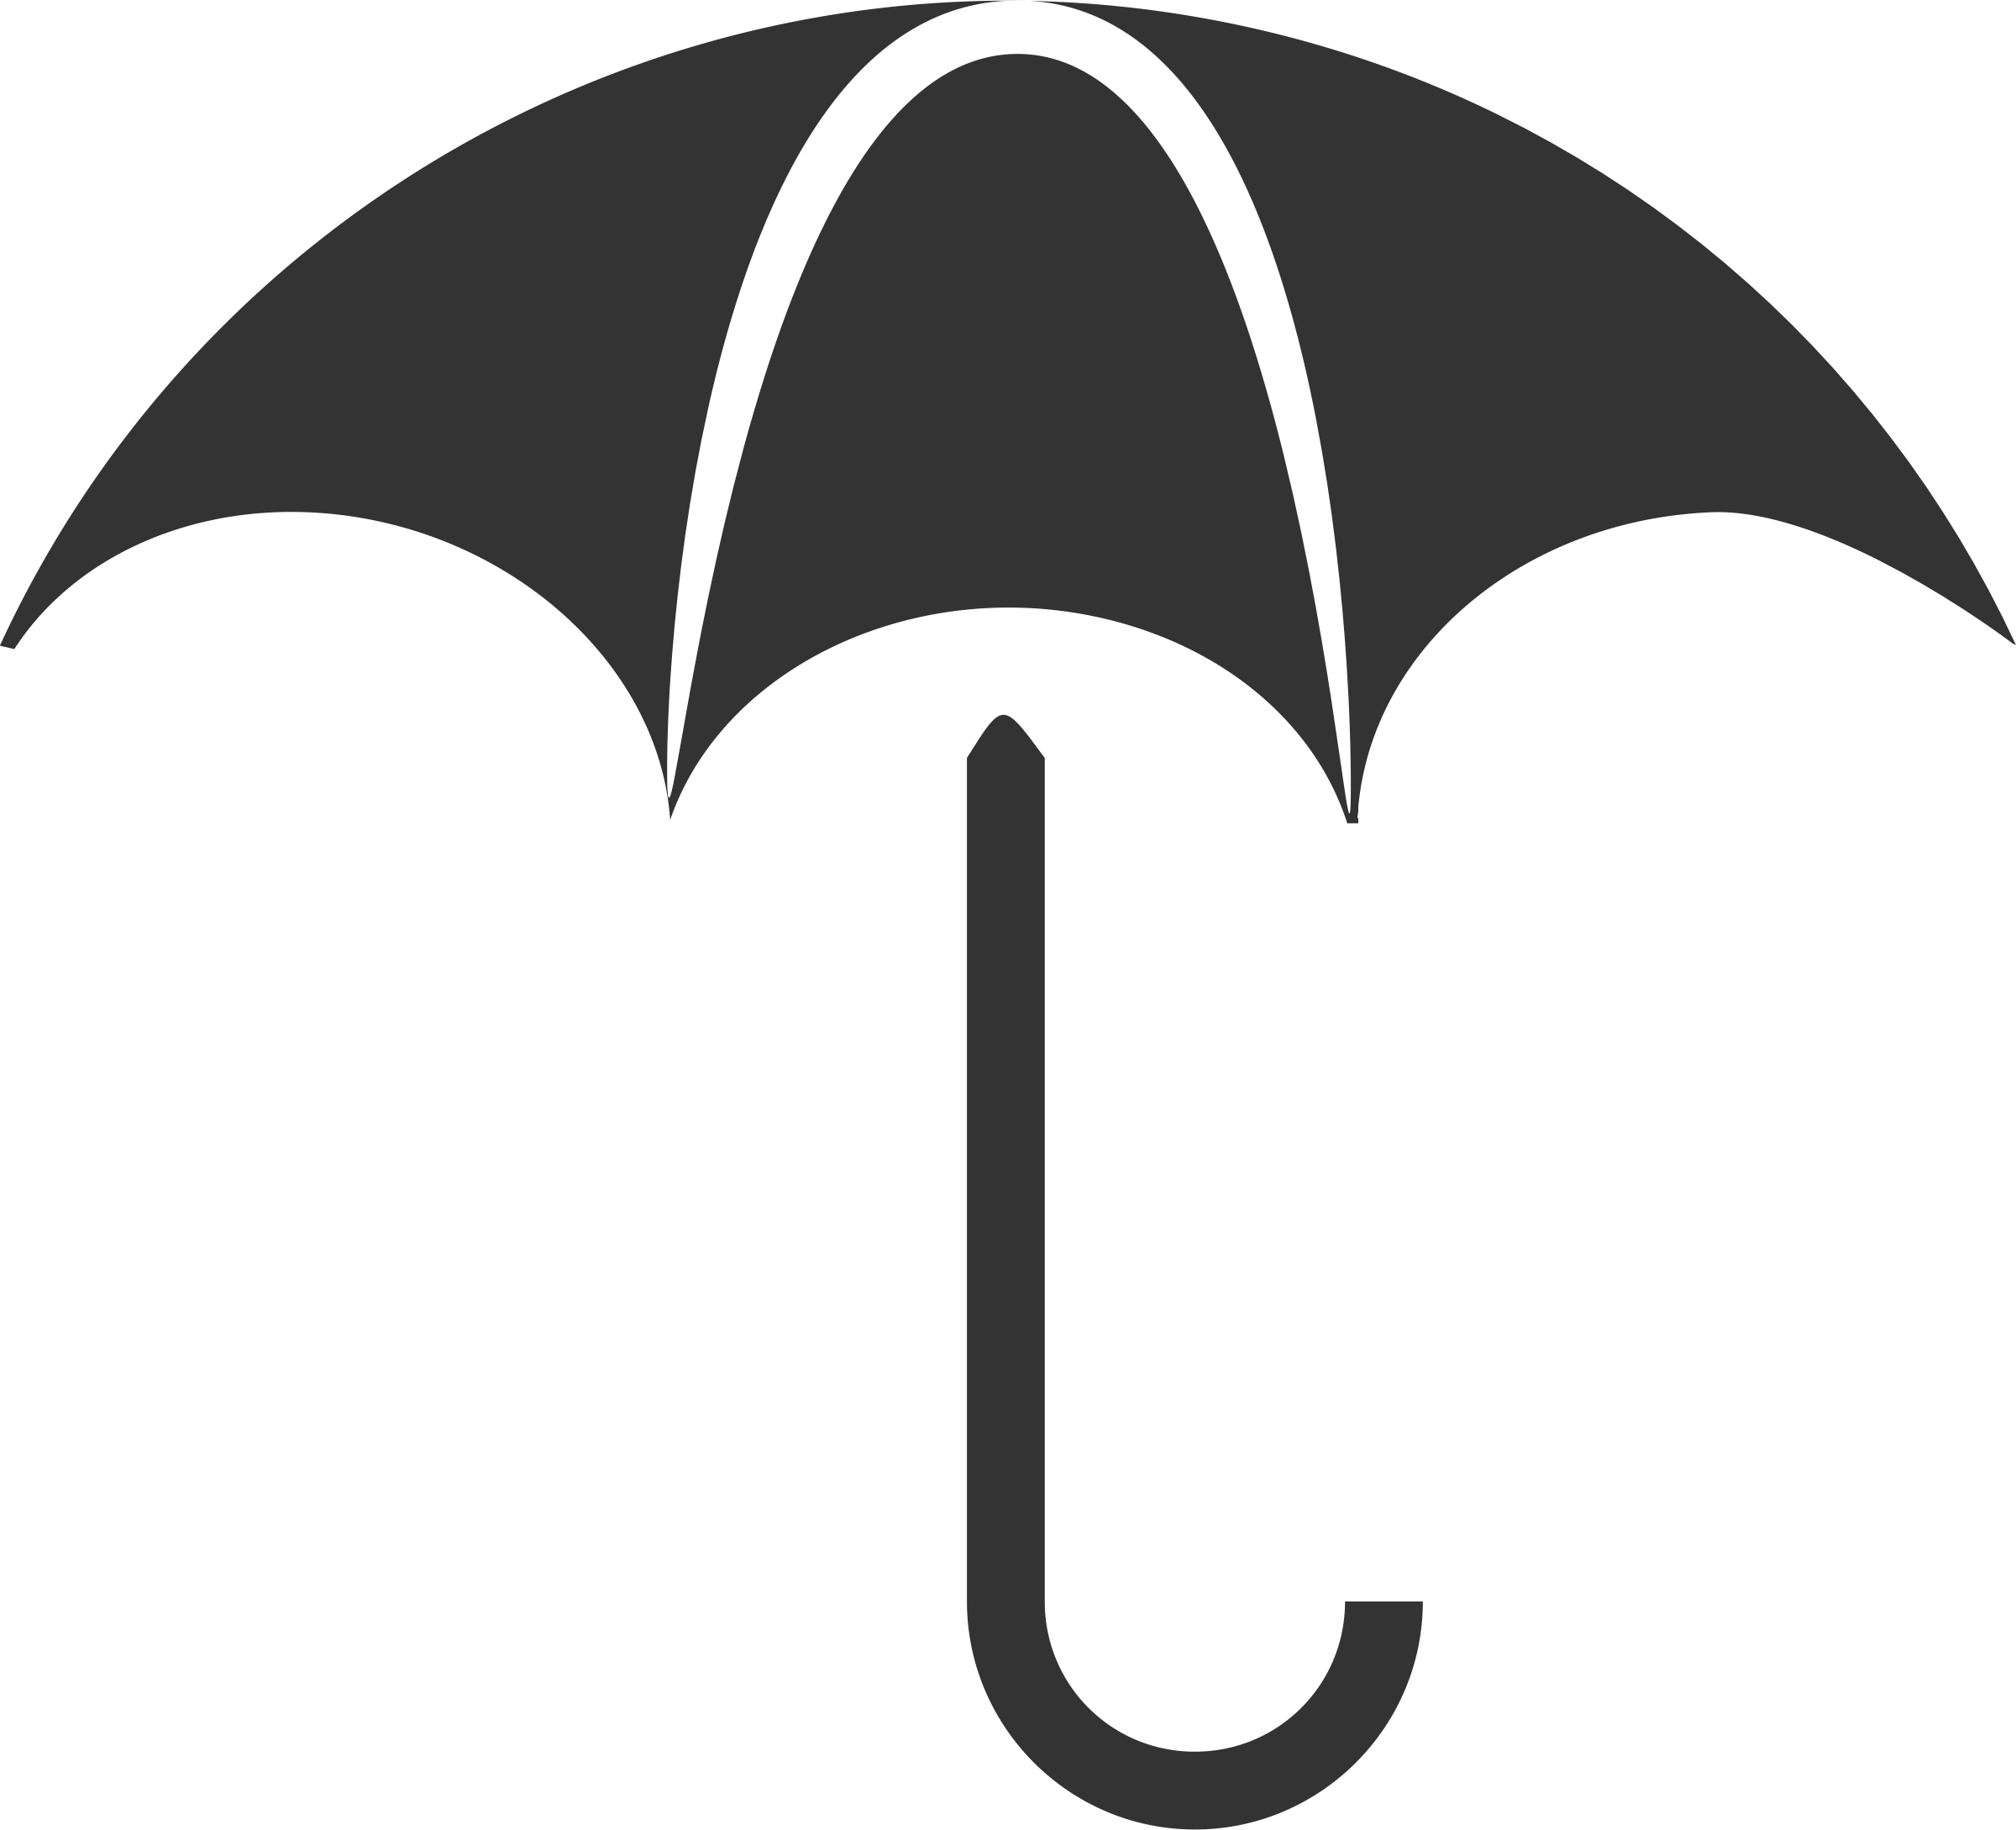 Big image png. Clipart umbrella vector